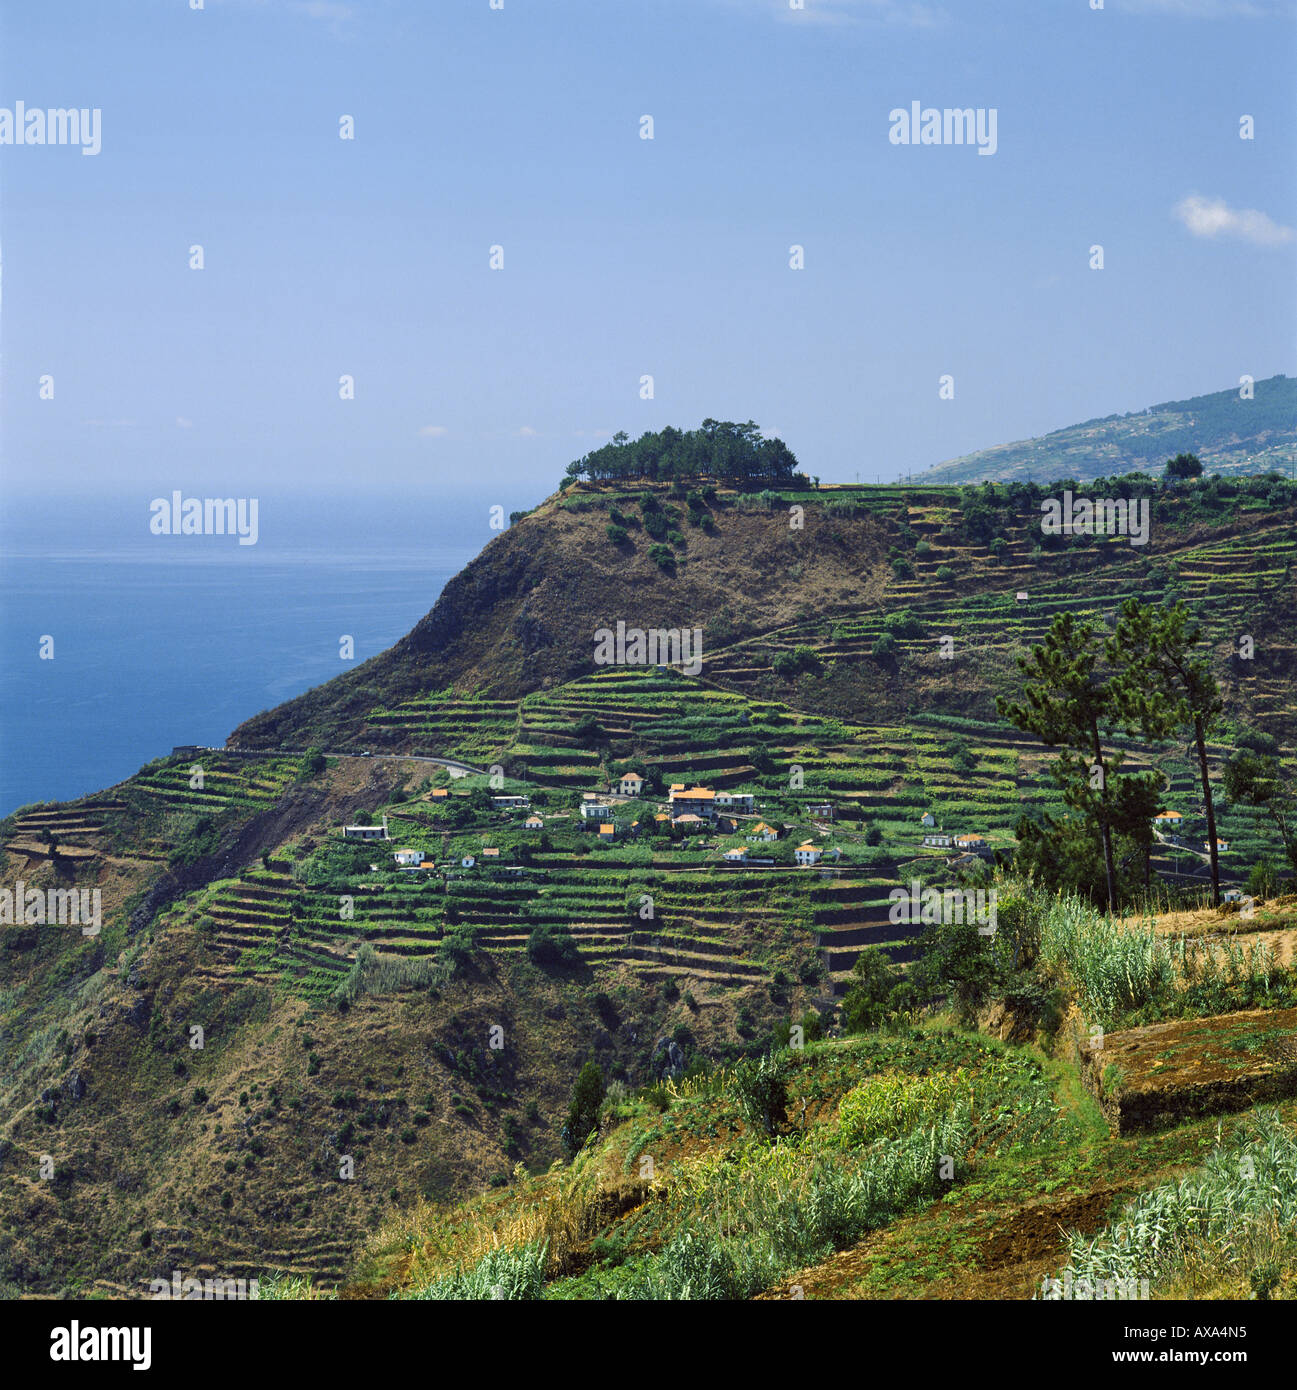 Portugal, Madeira, en terrazas agrícolas en ladera cercana Calheta Foto de stock